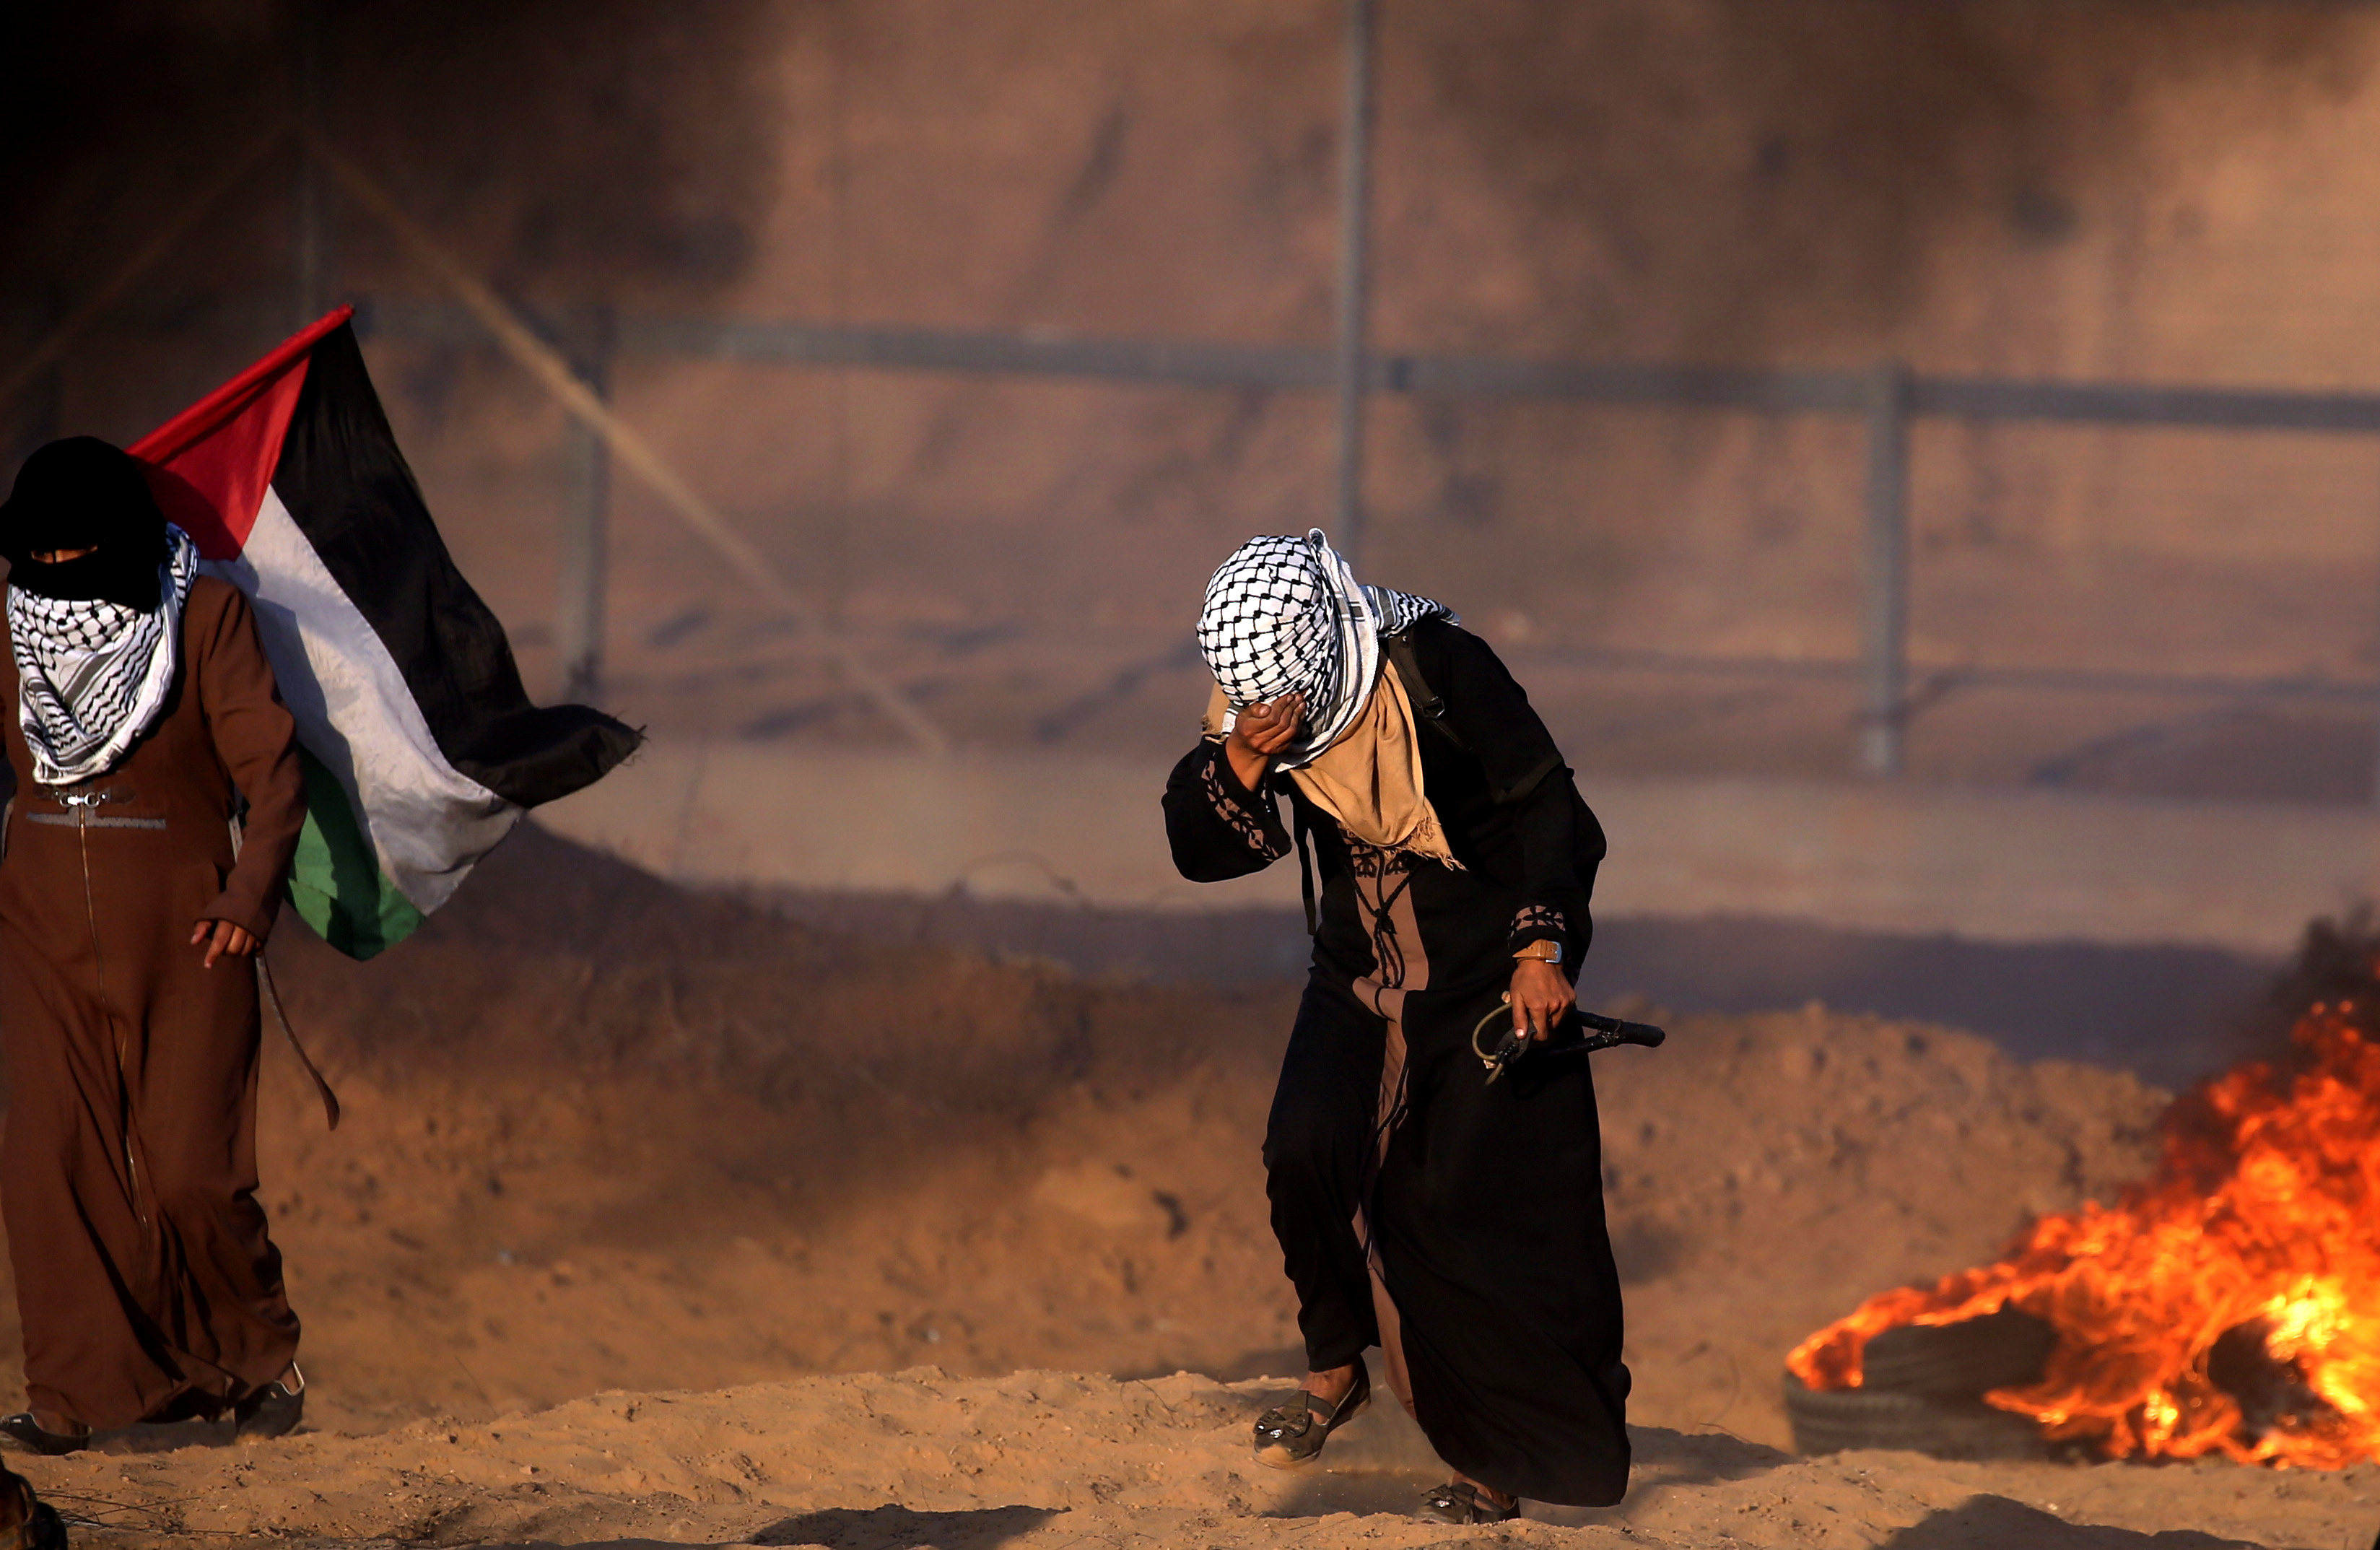 قوات الاحتلال تكثف من اطلاق الغاز المسيل للدموع خلال احتجاجات الفلسطينيين بجنوب قطاع غزة